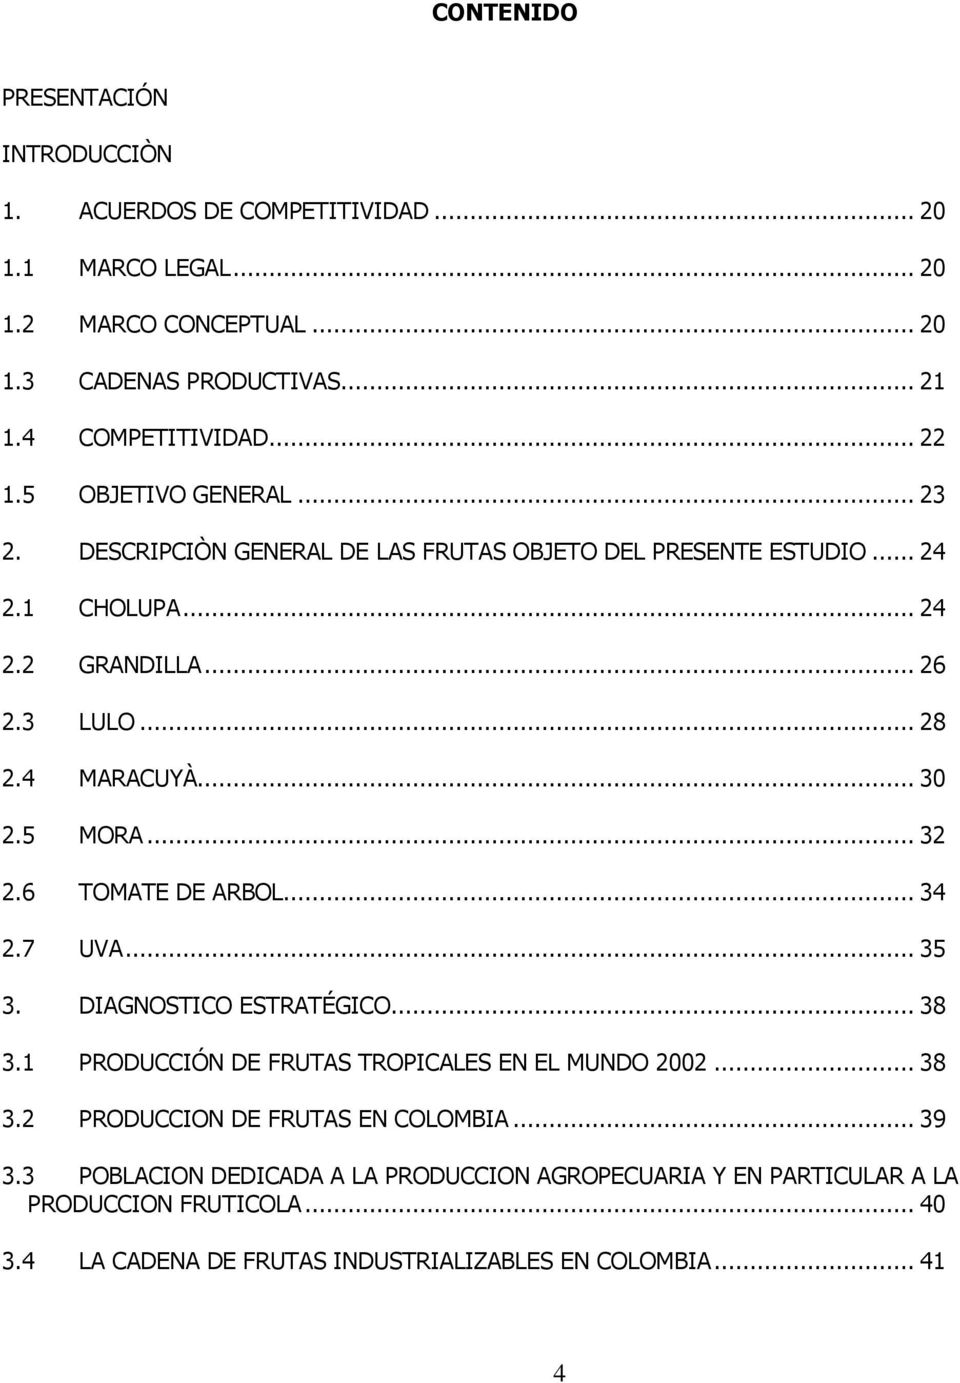 4 MARACUYÀ... 30 2.5 MORA... 32 2.6 TOMATE DE ARBOL... 34 2.7 UVA... 35 3. DIAGNOSTICO ESTRATÉGICO... 38 3.1 PRODUCCIÓN DE FRUTAS TROPICALES EN EL MUNDO 2002... 38 3.2 PRODUCCION DE FRUTAS EN COLOMBIA.